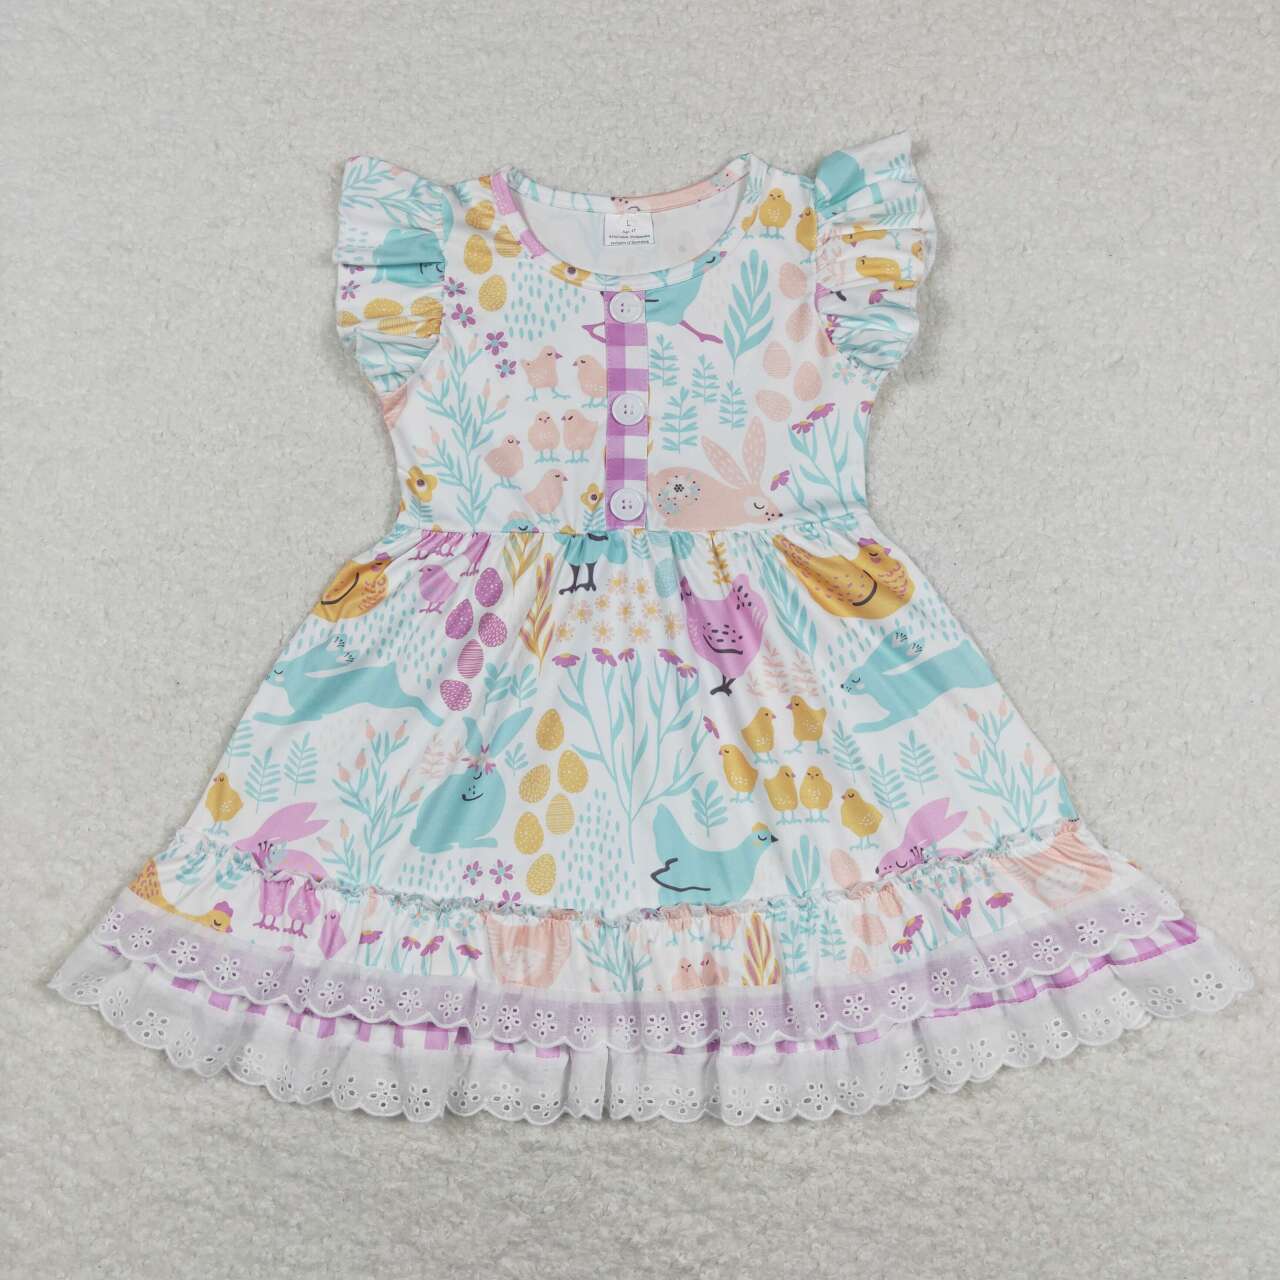 GSD0701 Bunny Flowers Print Girls Easter Knee Length Dress